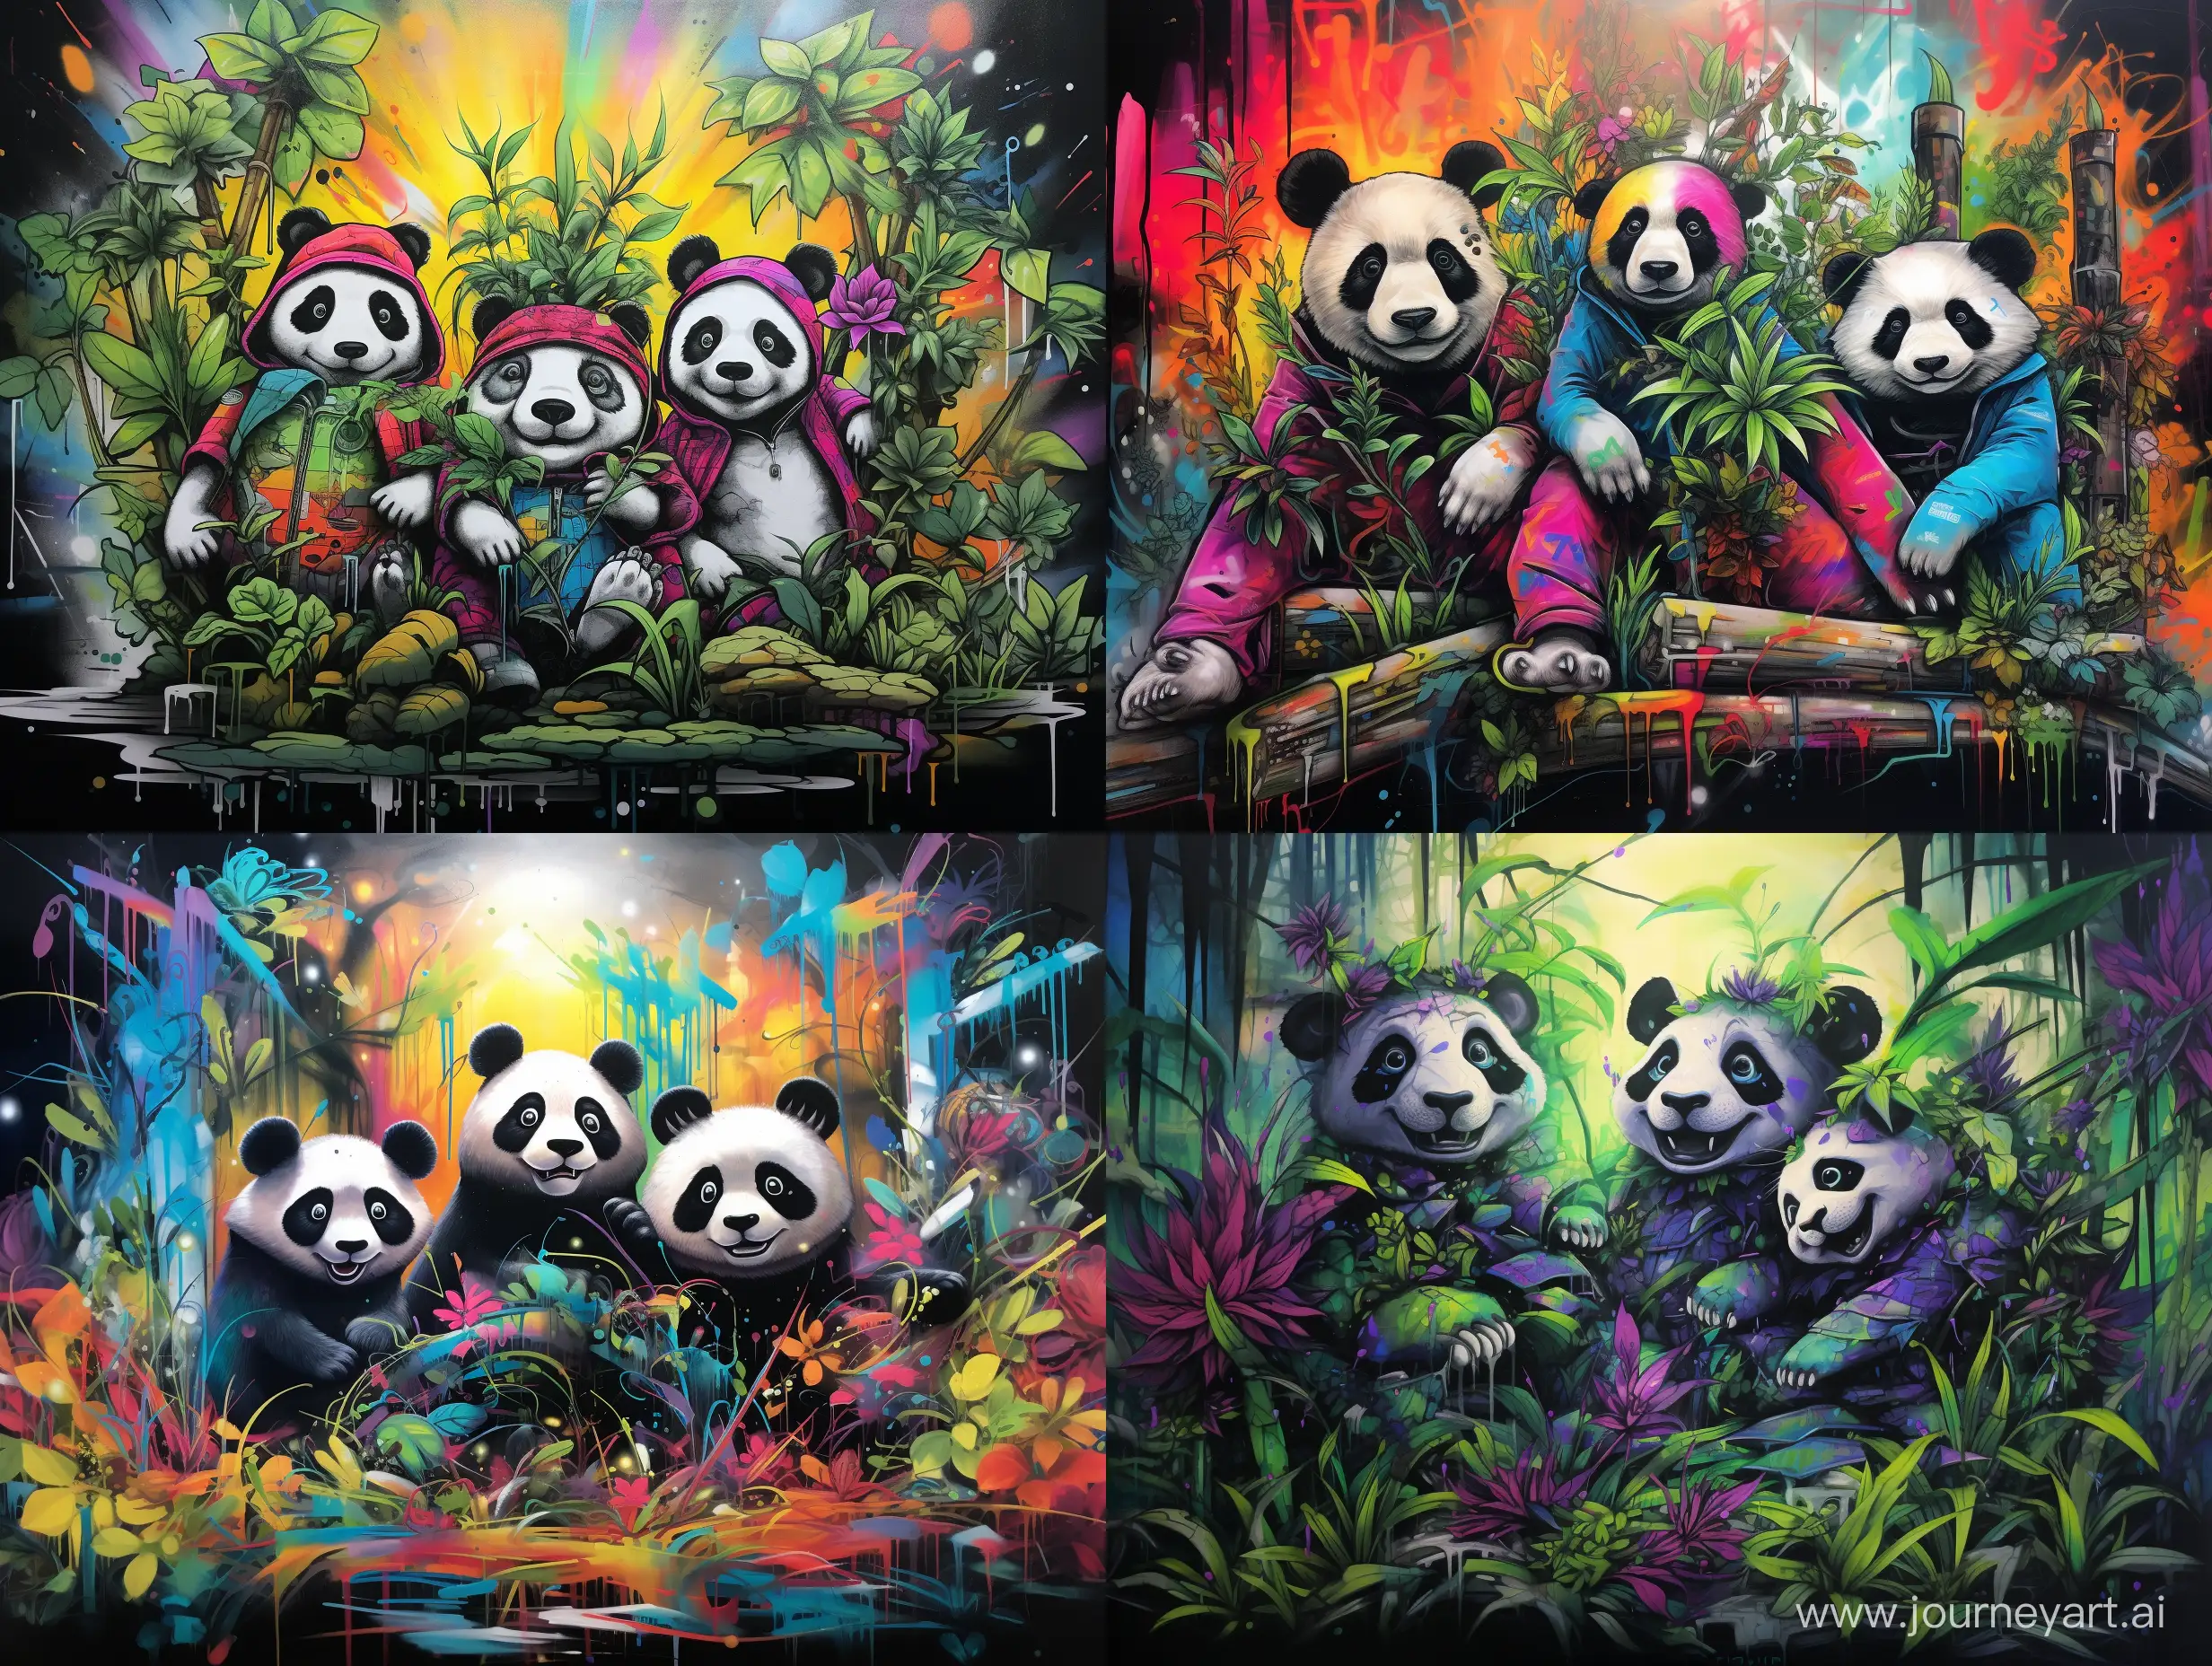 4 pandas, bamboo, graffiti, sketch art